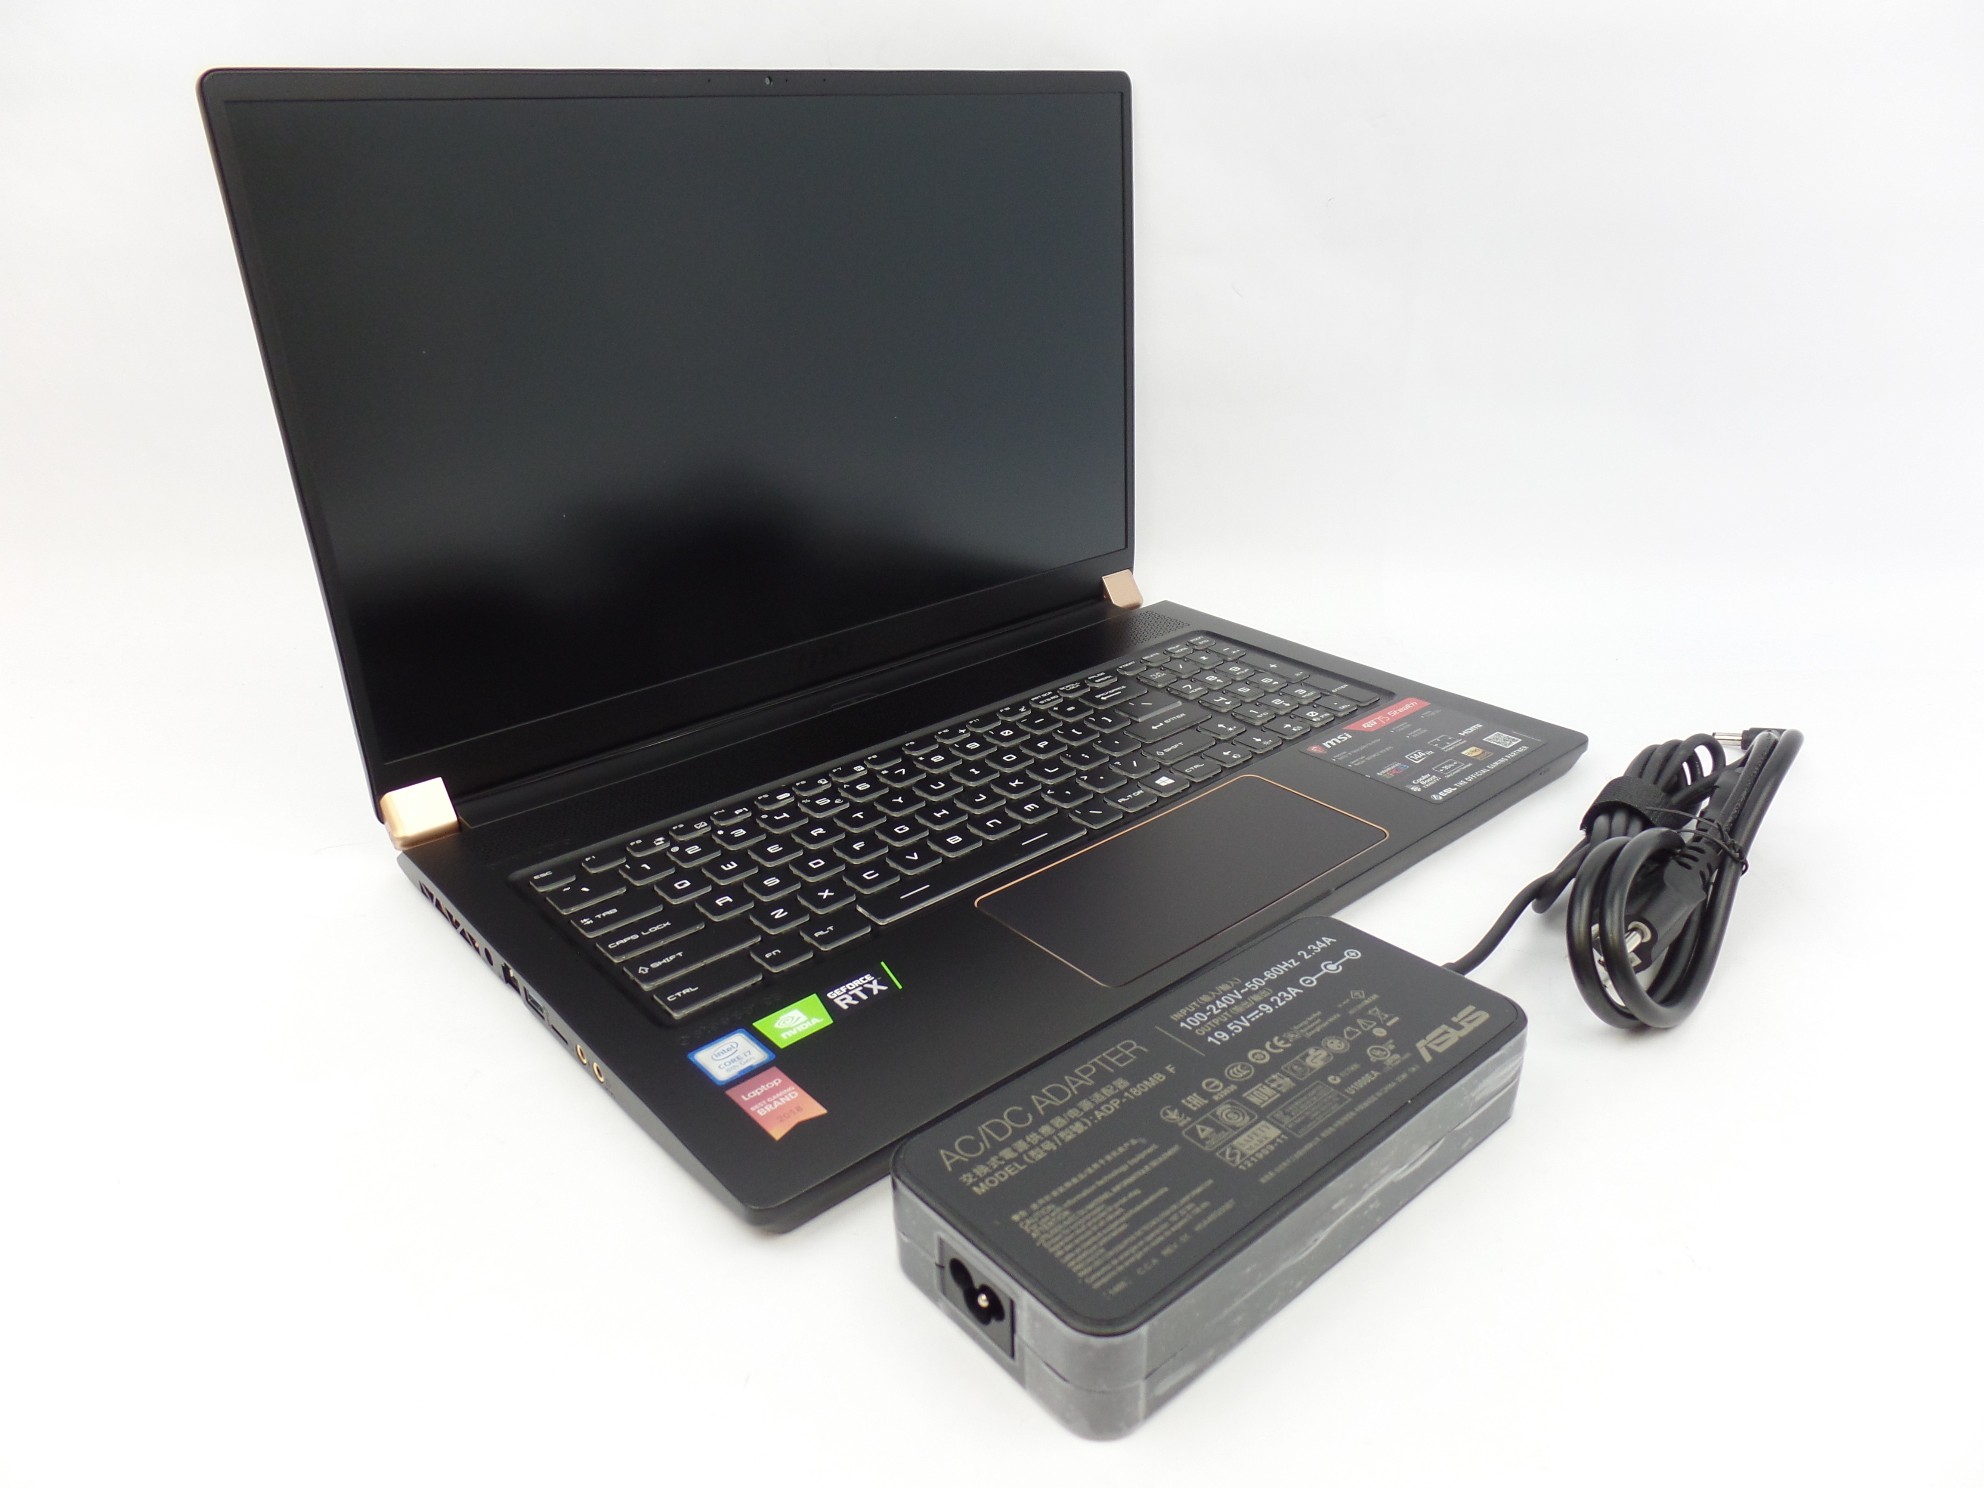 MSI GS75 Stealth 8SF 17.3" FHD 144Hz i7-8750H 16GB 512GB SSD RTX 2070 W10 Gaming